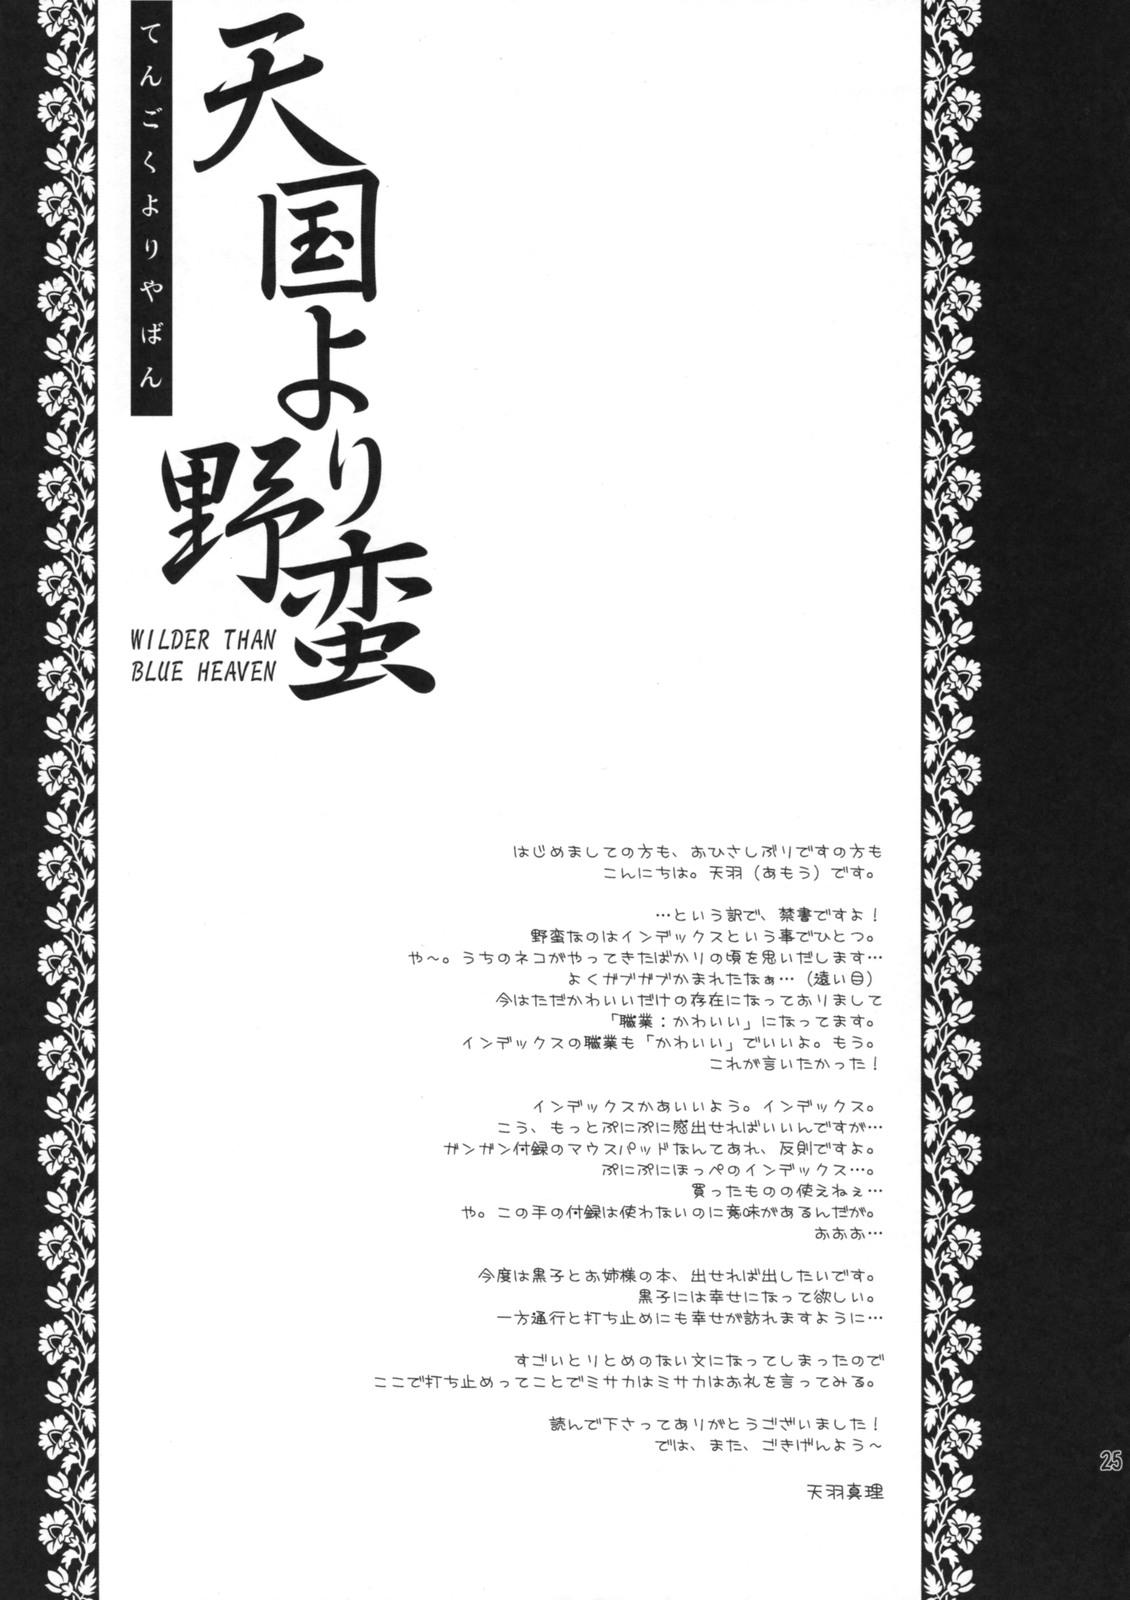 Por Tengoku yori Yaban - WILDER THAN BLUE HEAVEN - Toaru majutsu no index Yoga - Page 24